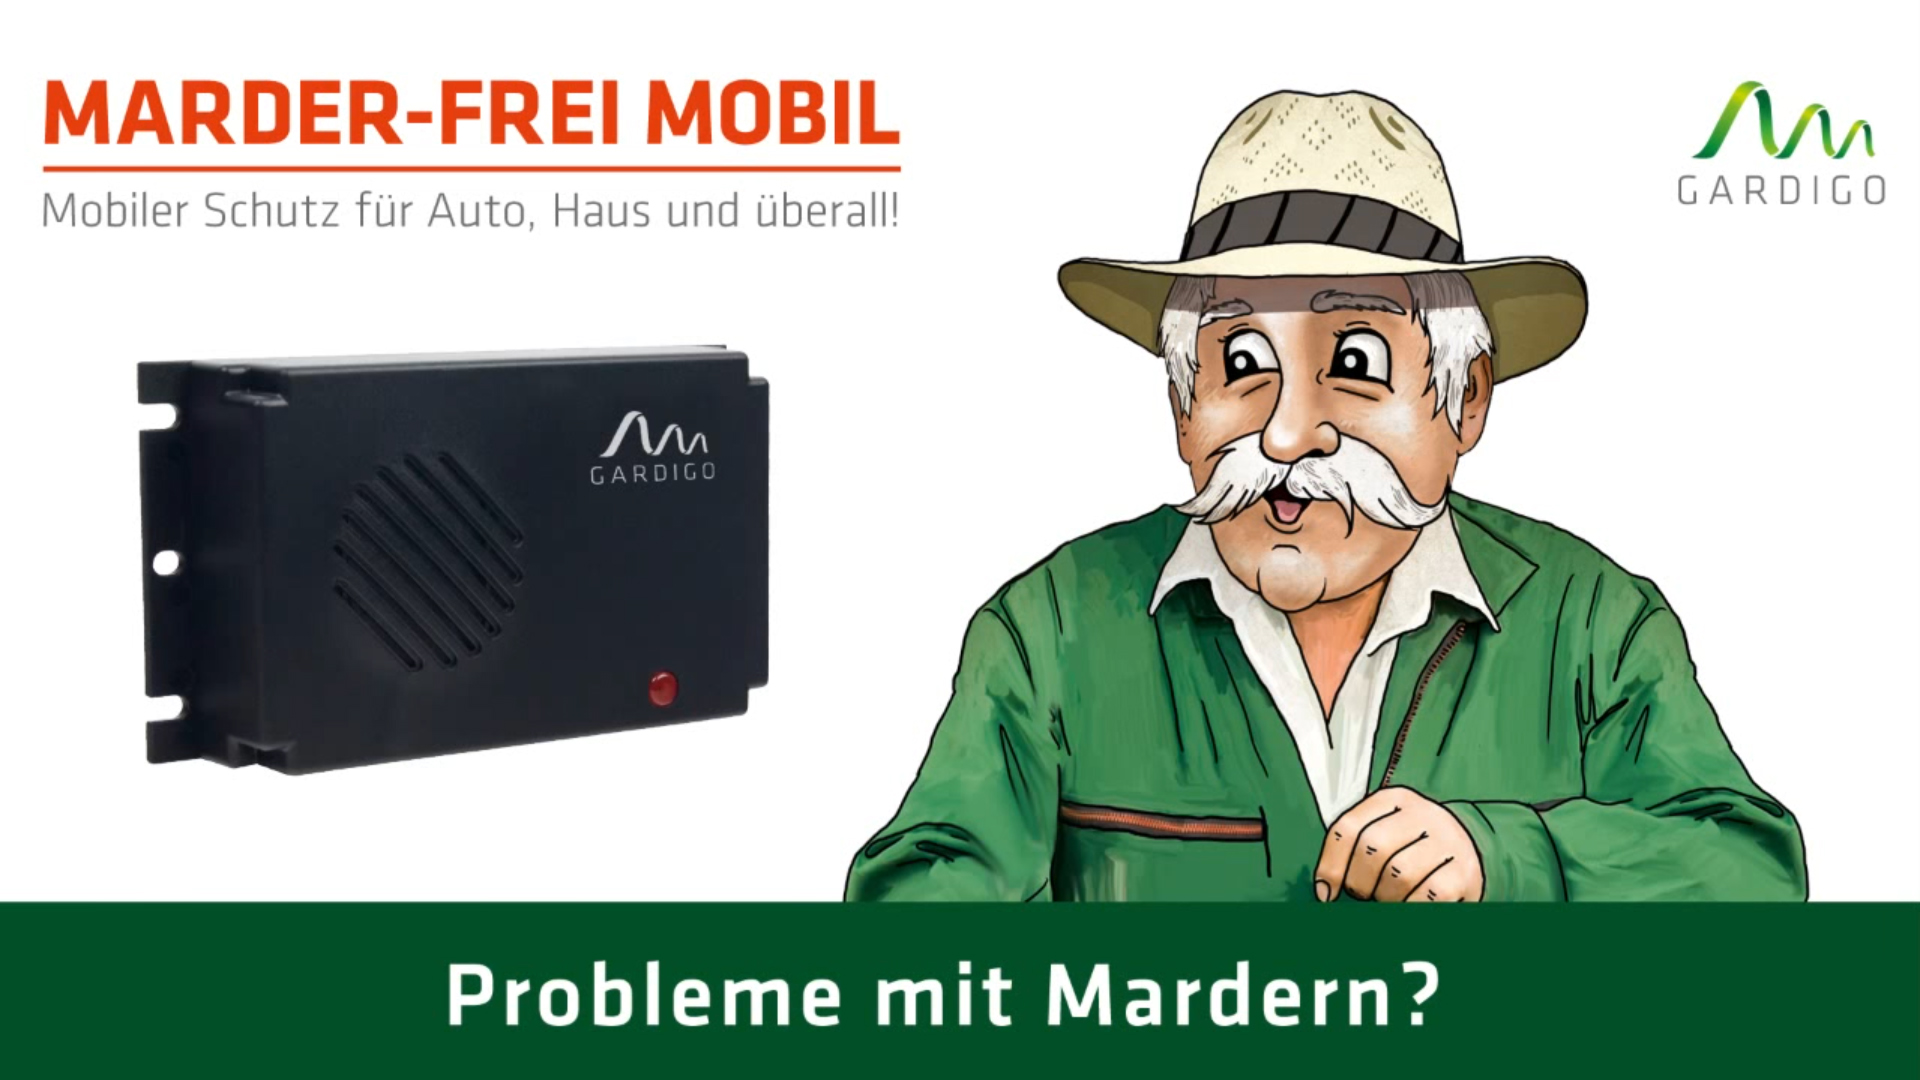 GARDIGO® Marderschreck Marder-Frei Mobil | 25 Jahre Erfahrung mit  Marderabwehr | Marderschreck Auto Batteriebetrieben | Marderschutz für KFZ